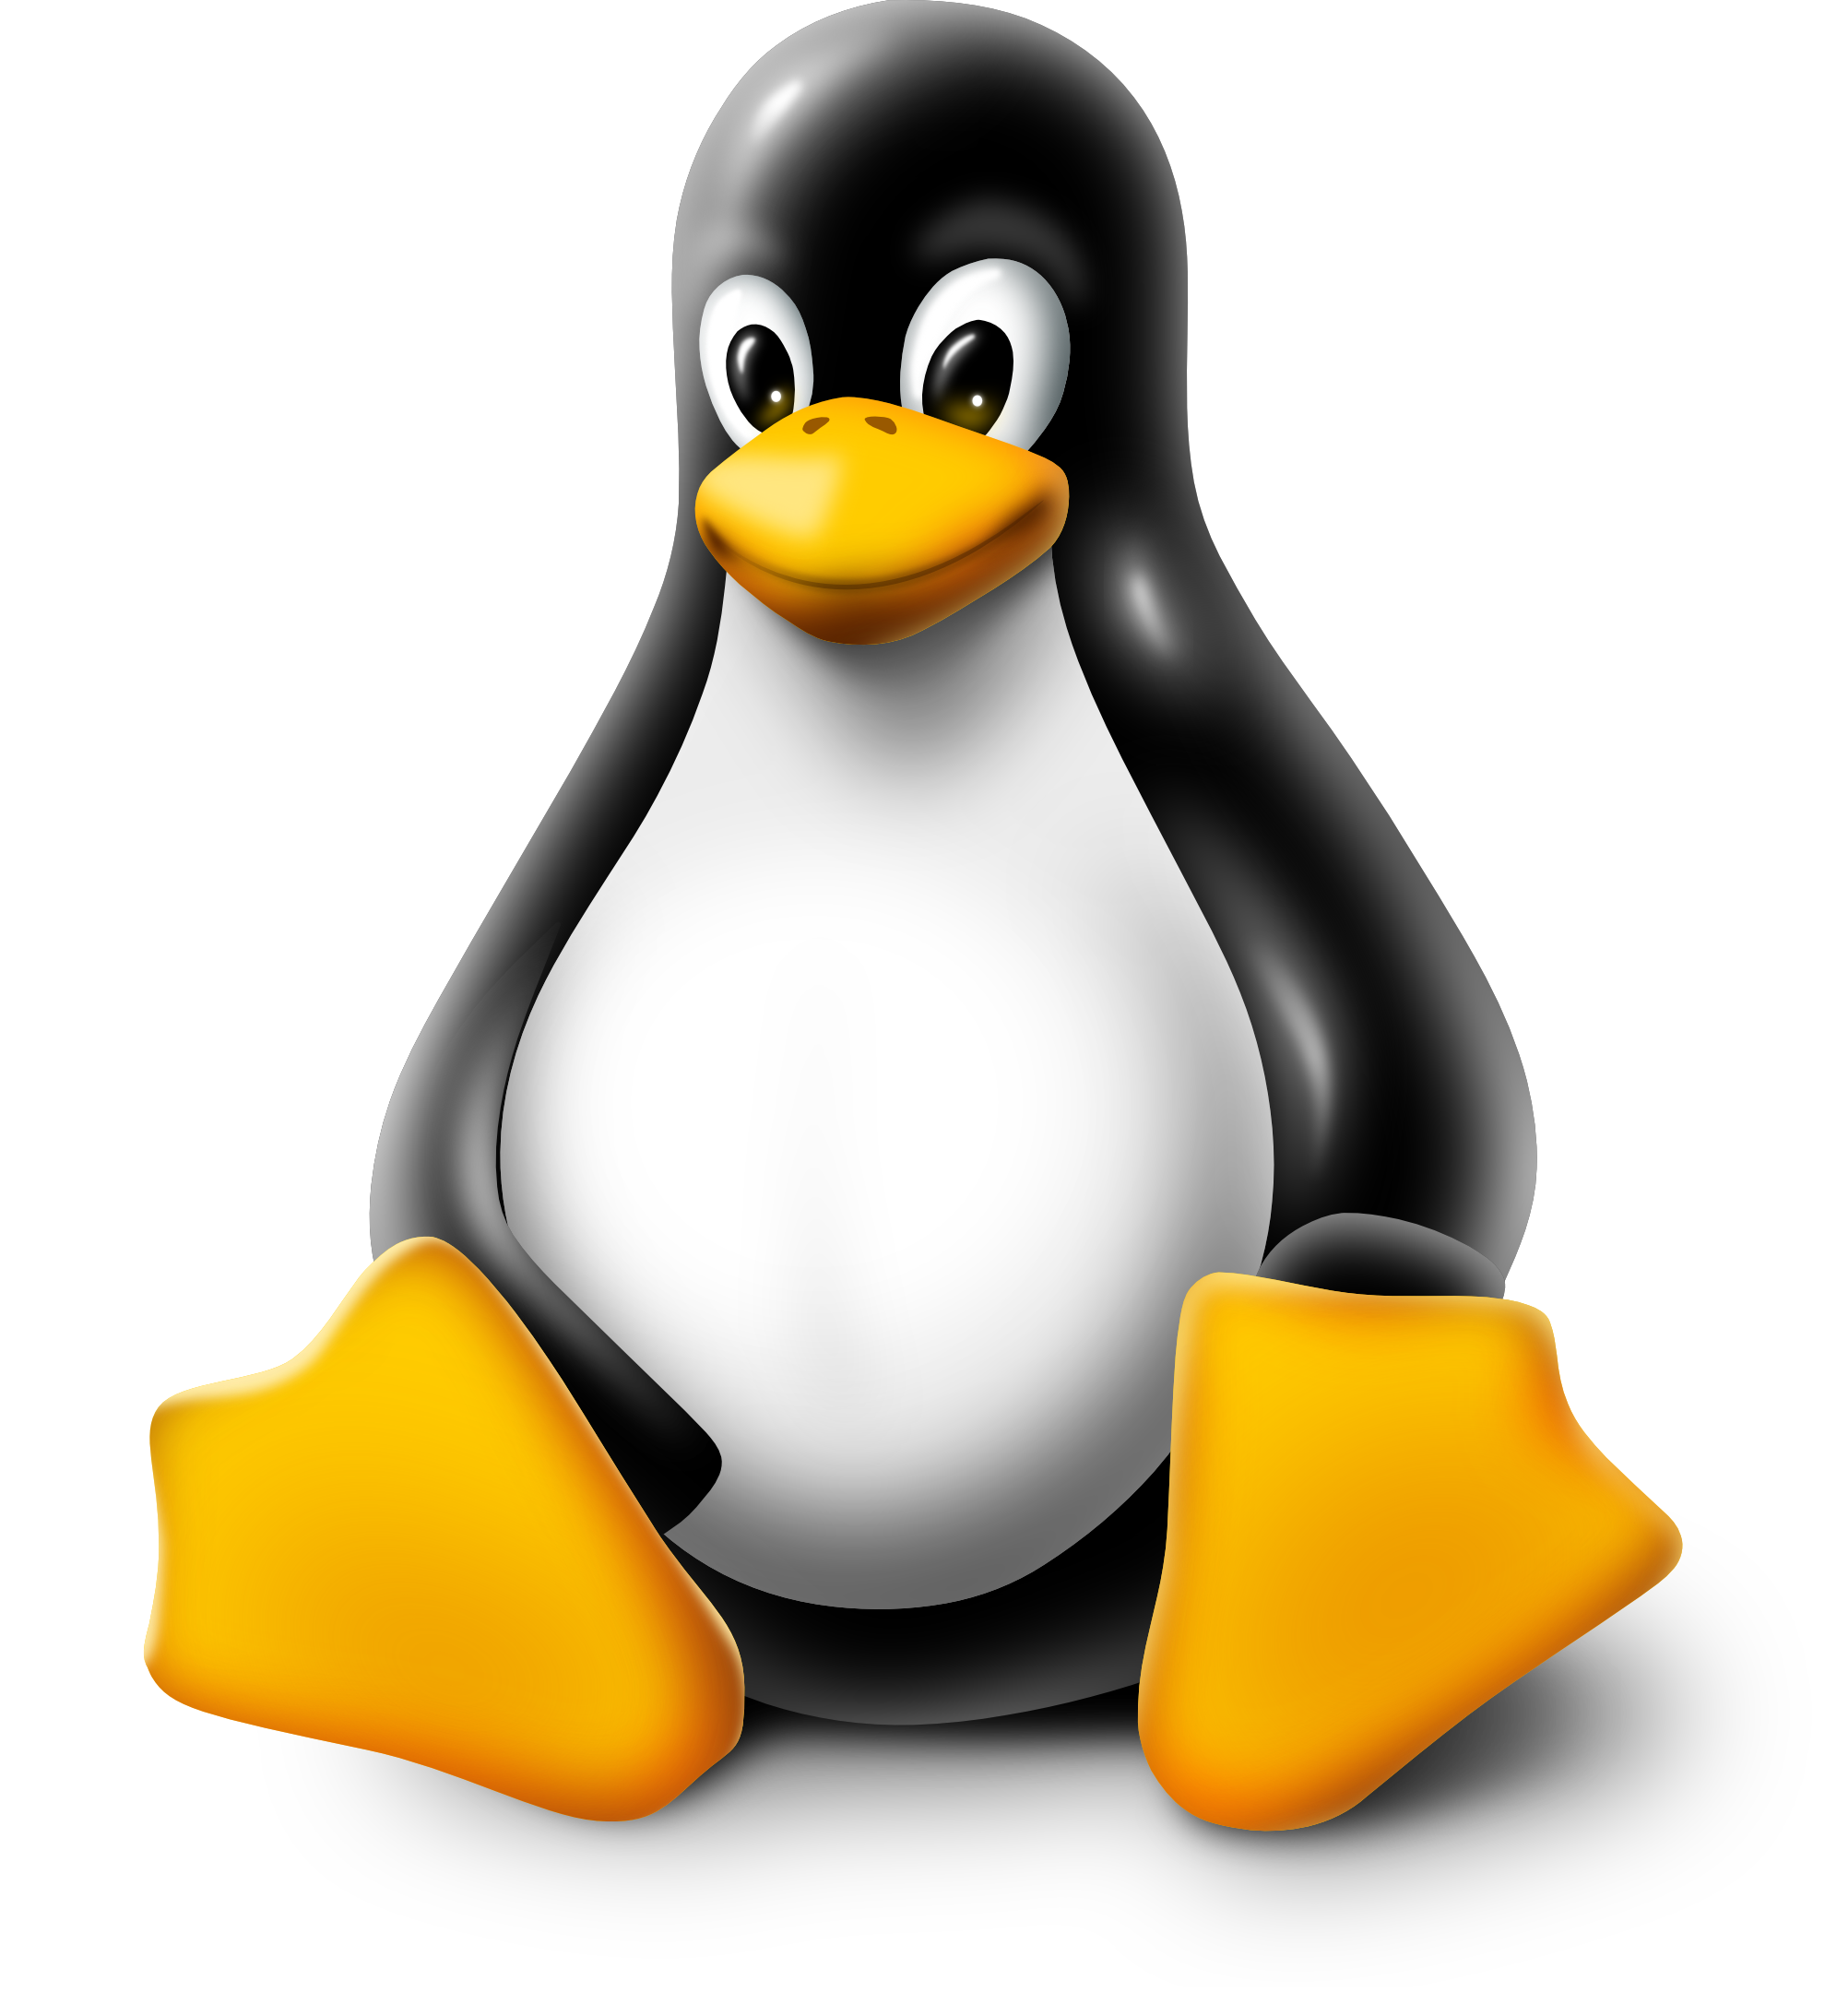 Linux Akademie